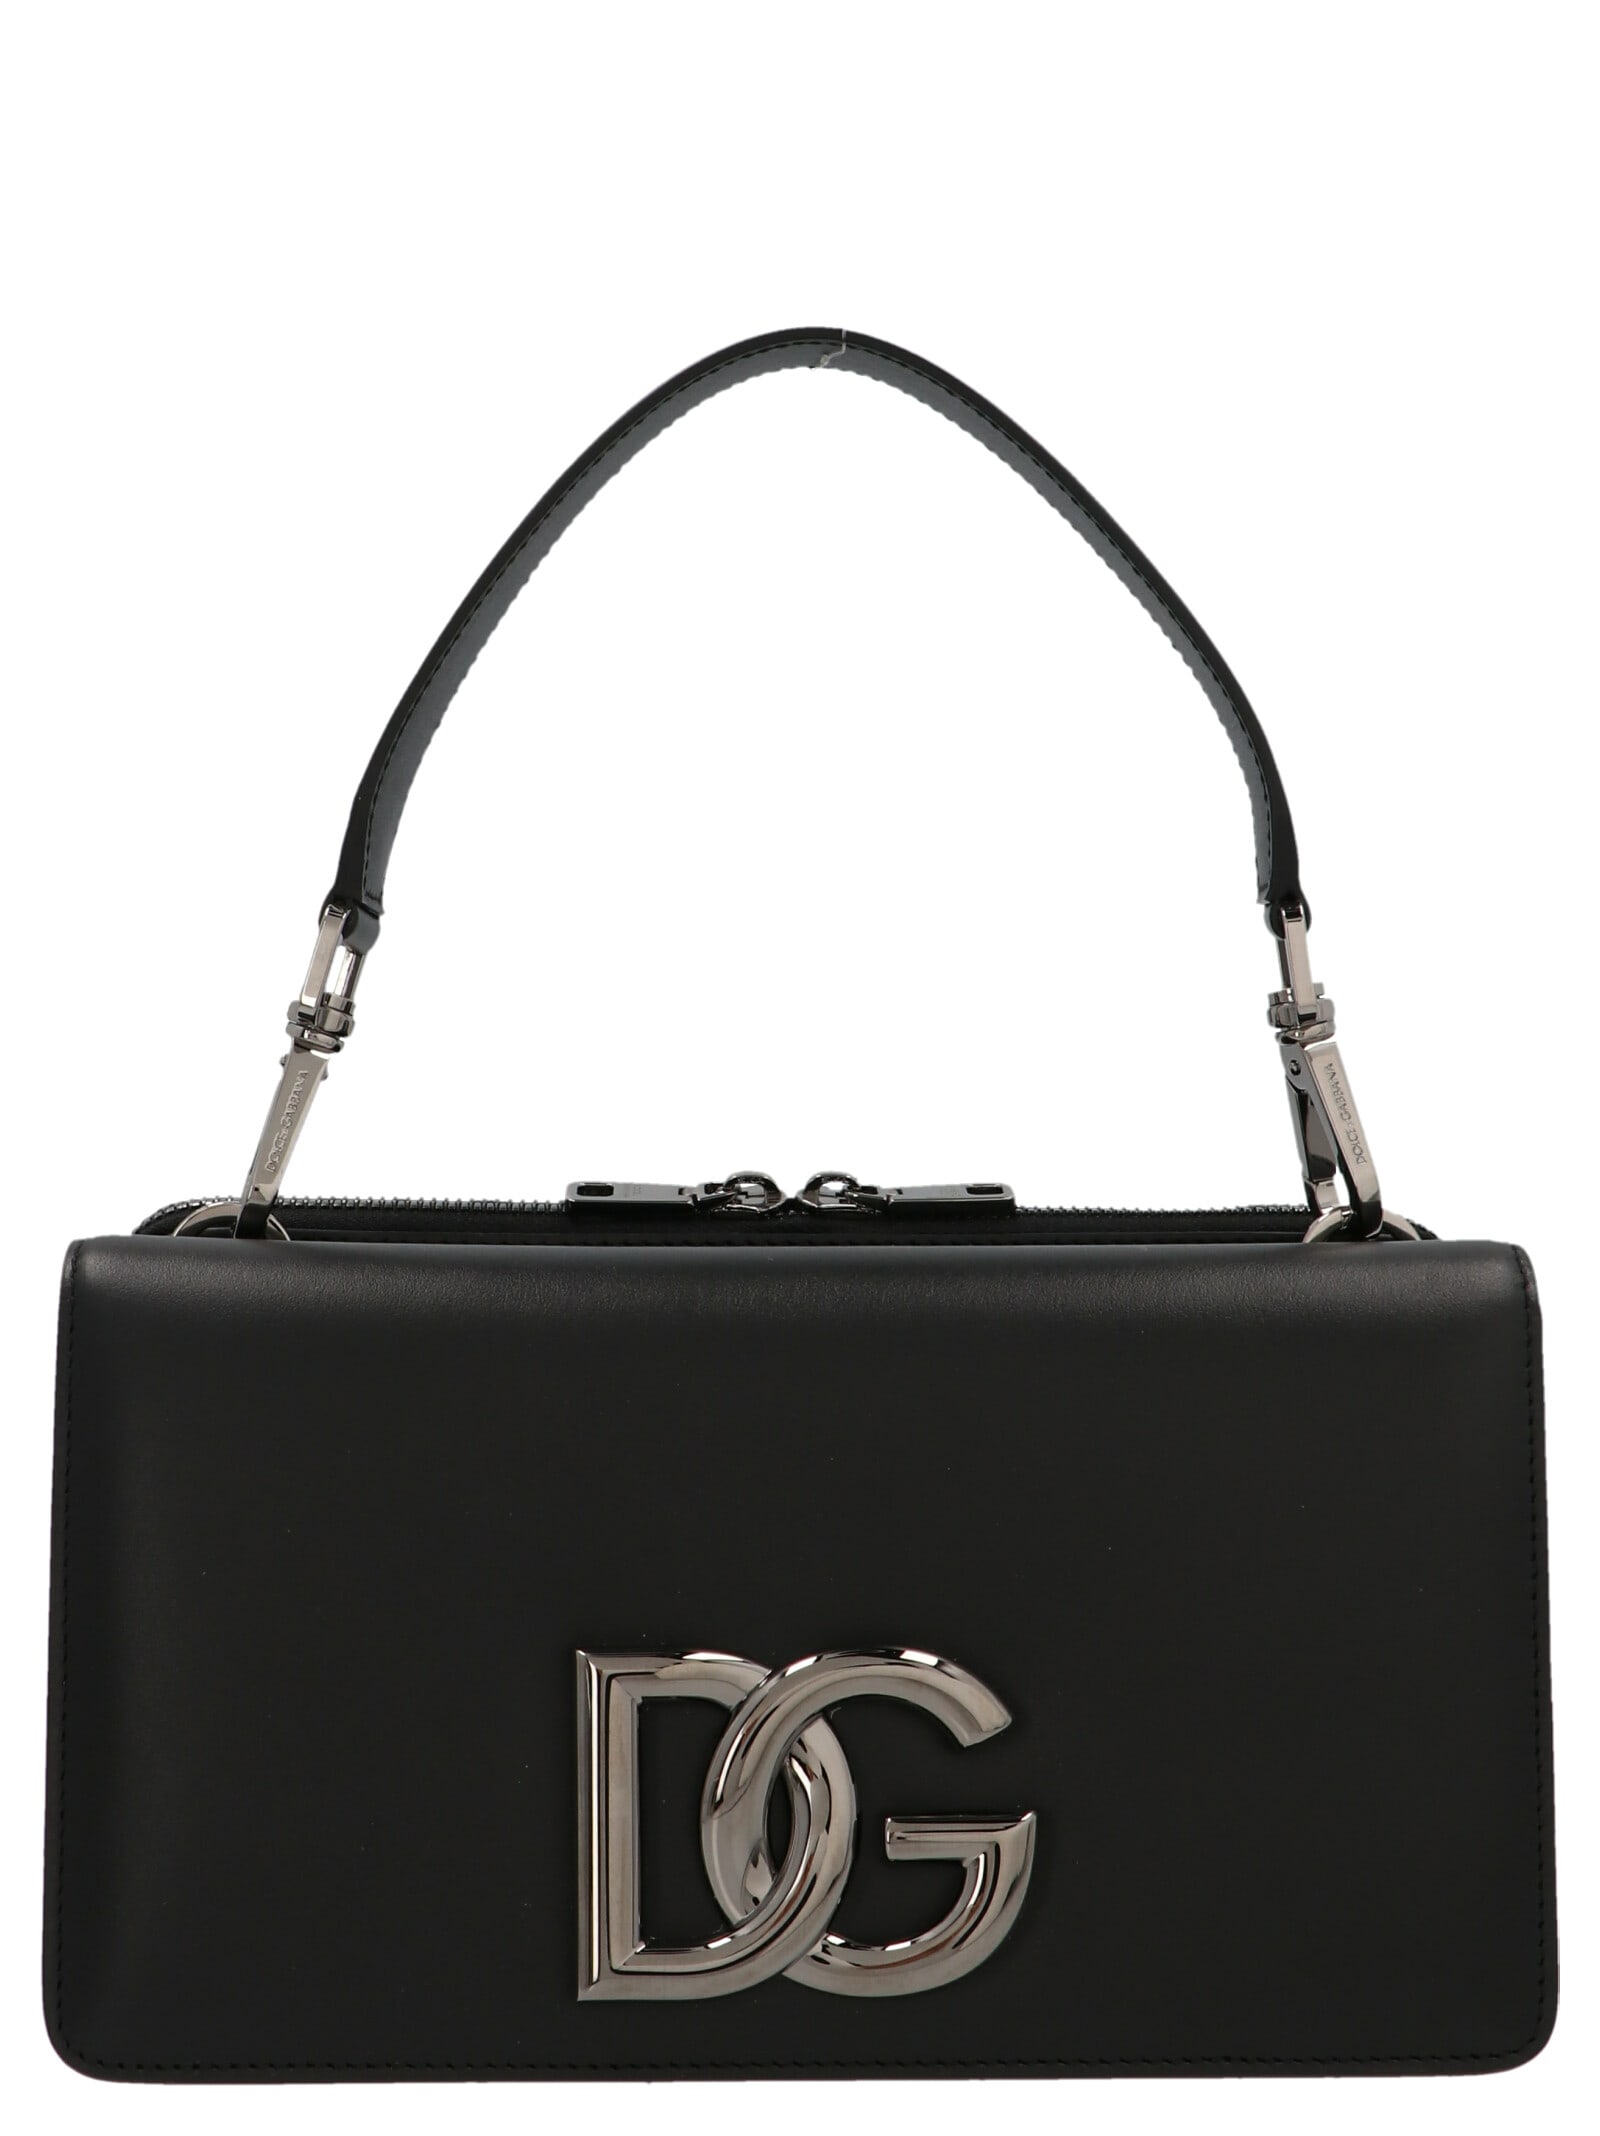 Dolce & Gabbana Logo Handbag